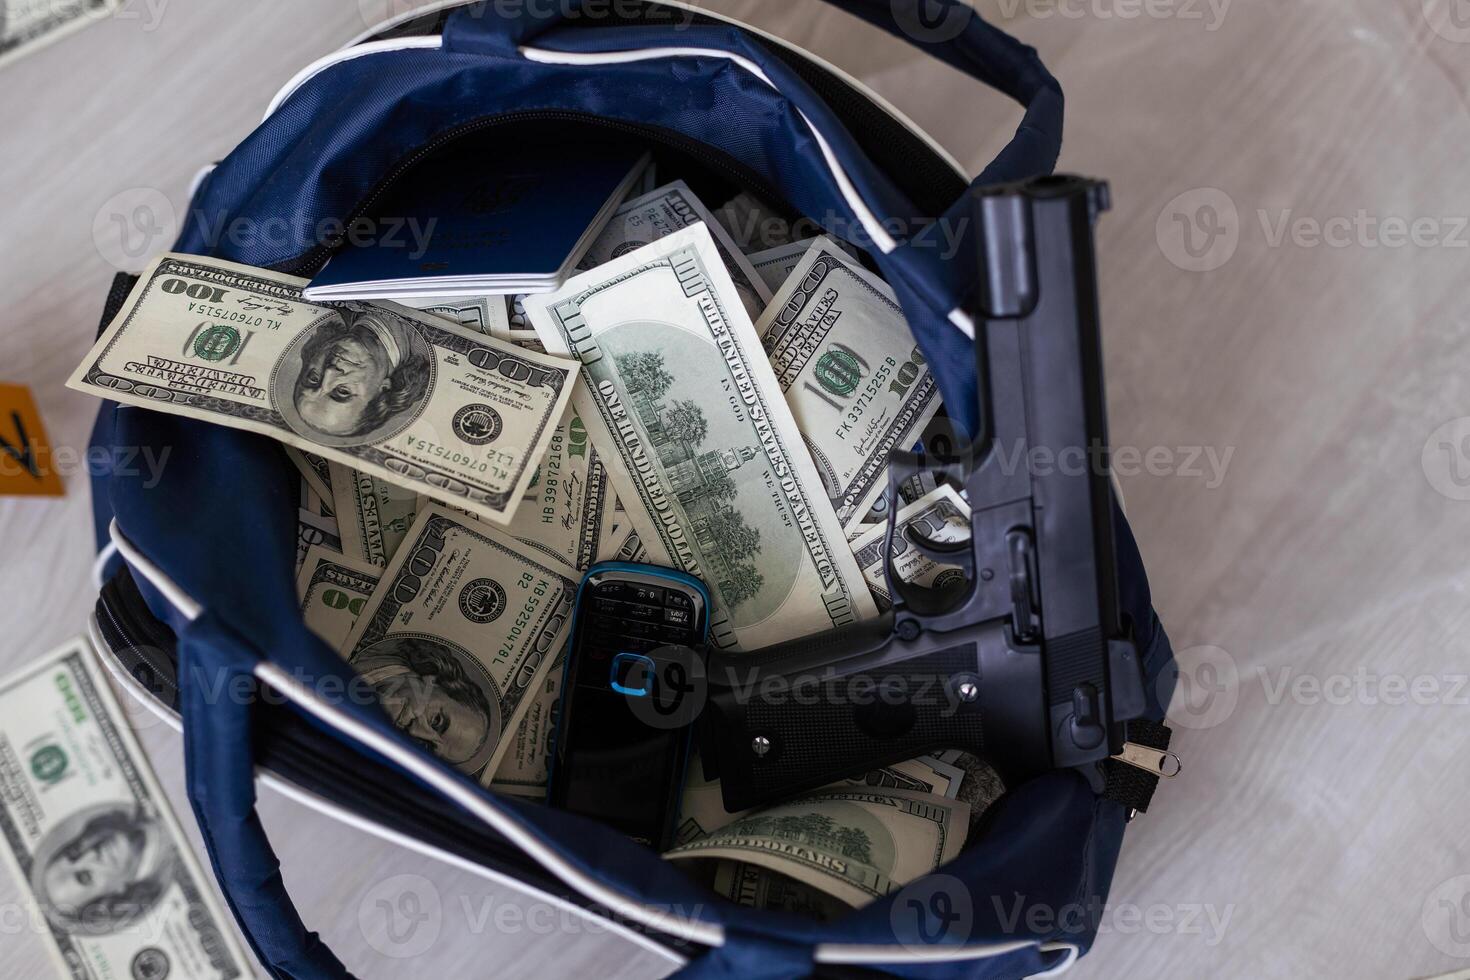 esposas en muchos pilas de dólar facturas. metal maleta con dinero, concepto de arrestar, investigación y fraude. foto